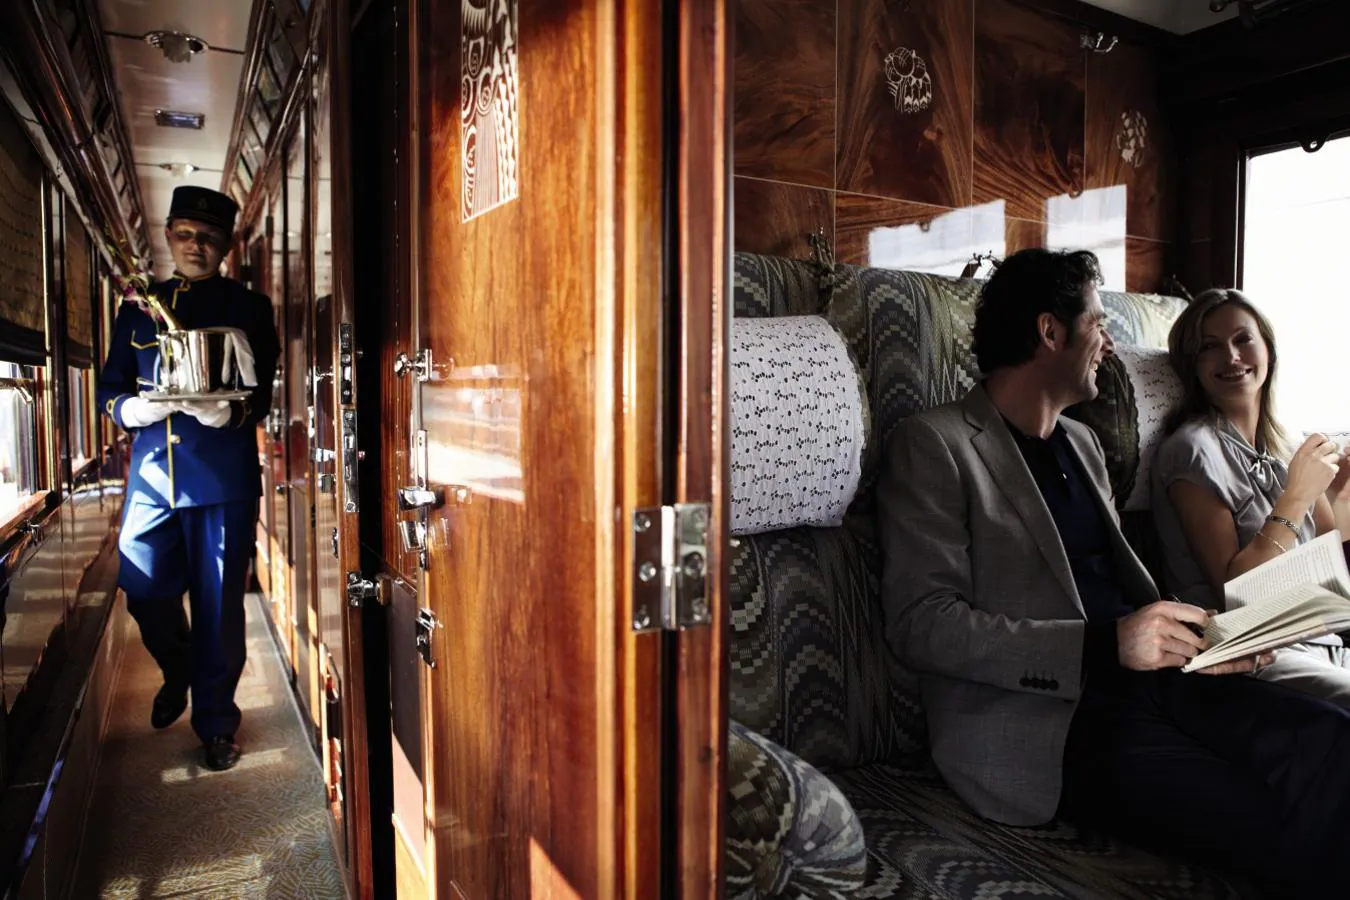 Venice Orient Express. El tren que alabaron personalidades de la talla de JK Rowling, Julia Roberts o The Rolling Stones incorpora de cara a 2020 tres nuevas "Grand Suites" (por lo que se dobla el número de dormitorios del tren) se llaman Viena, Praga y Budapest